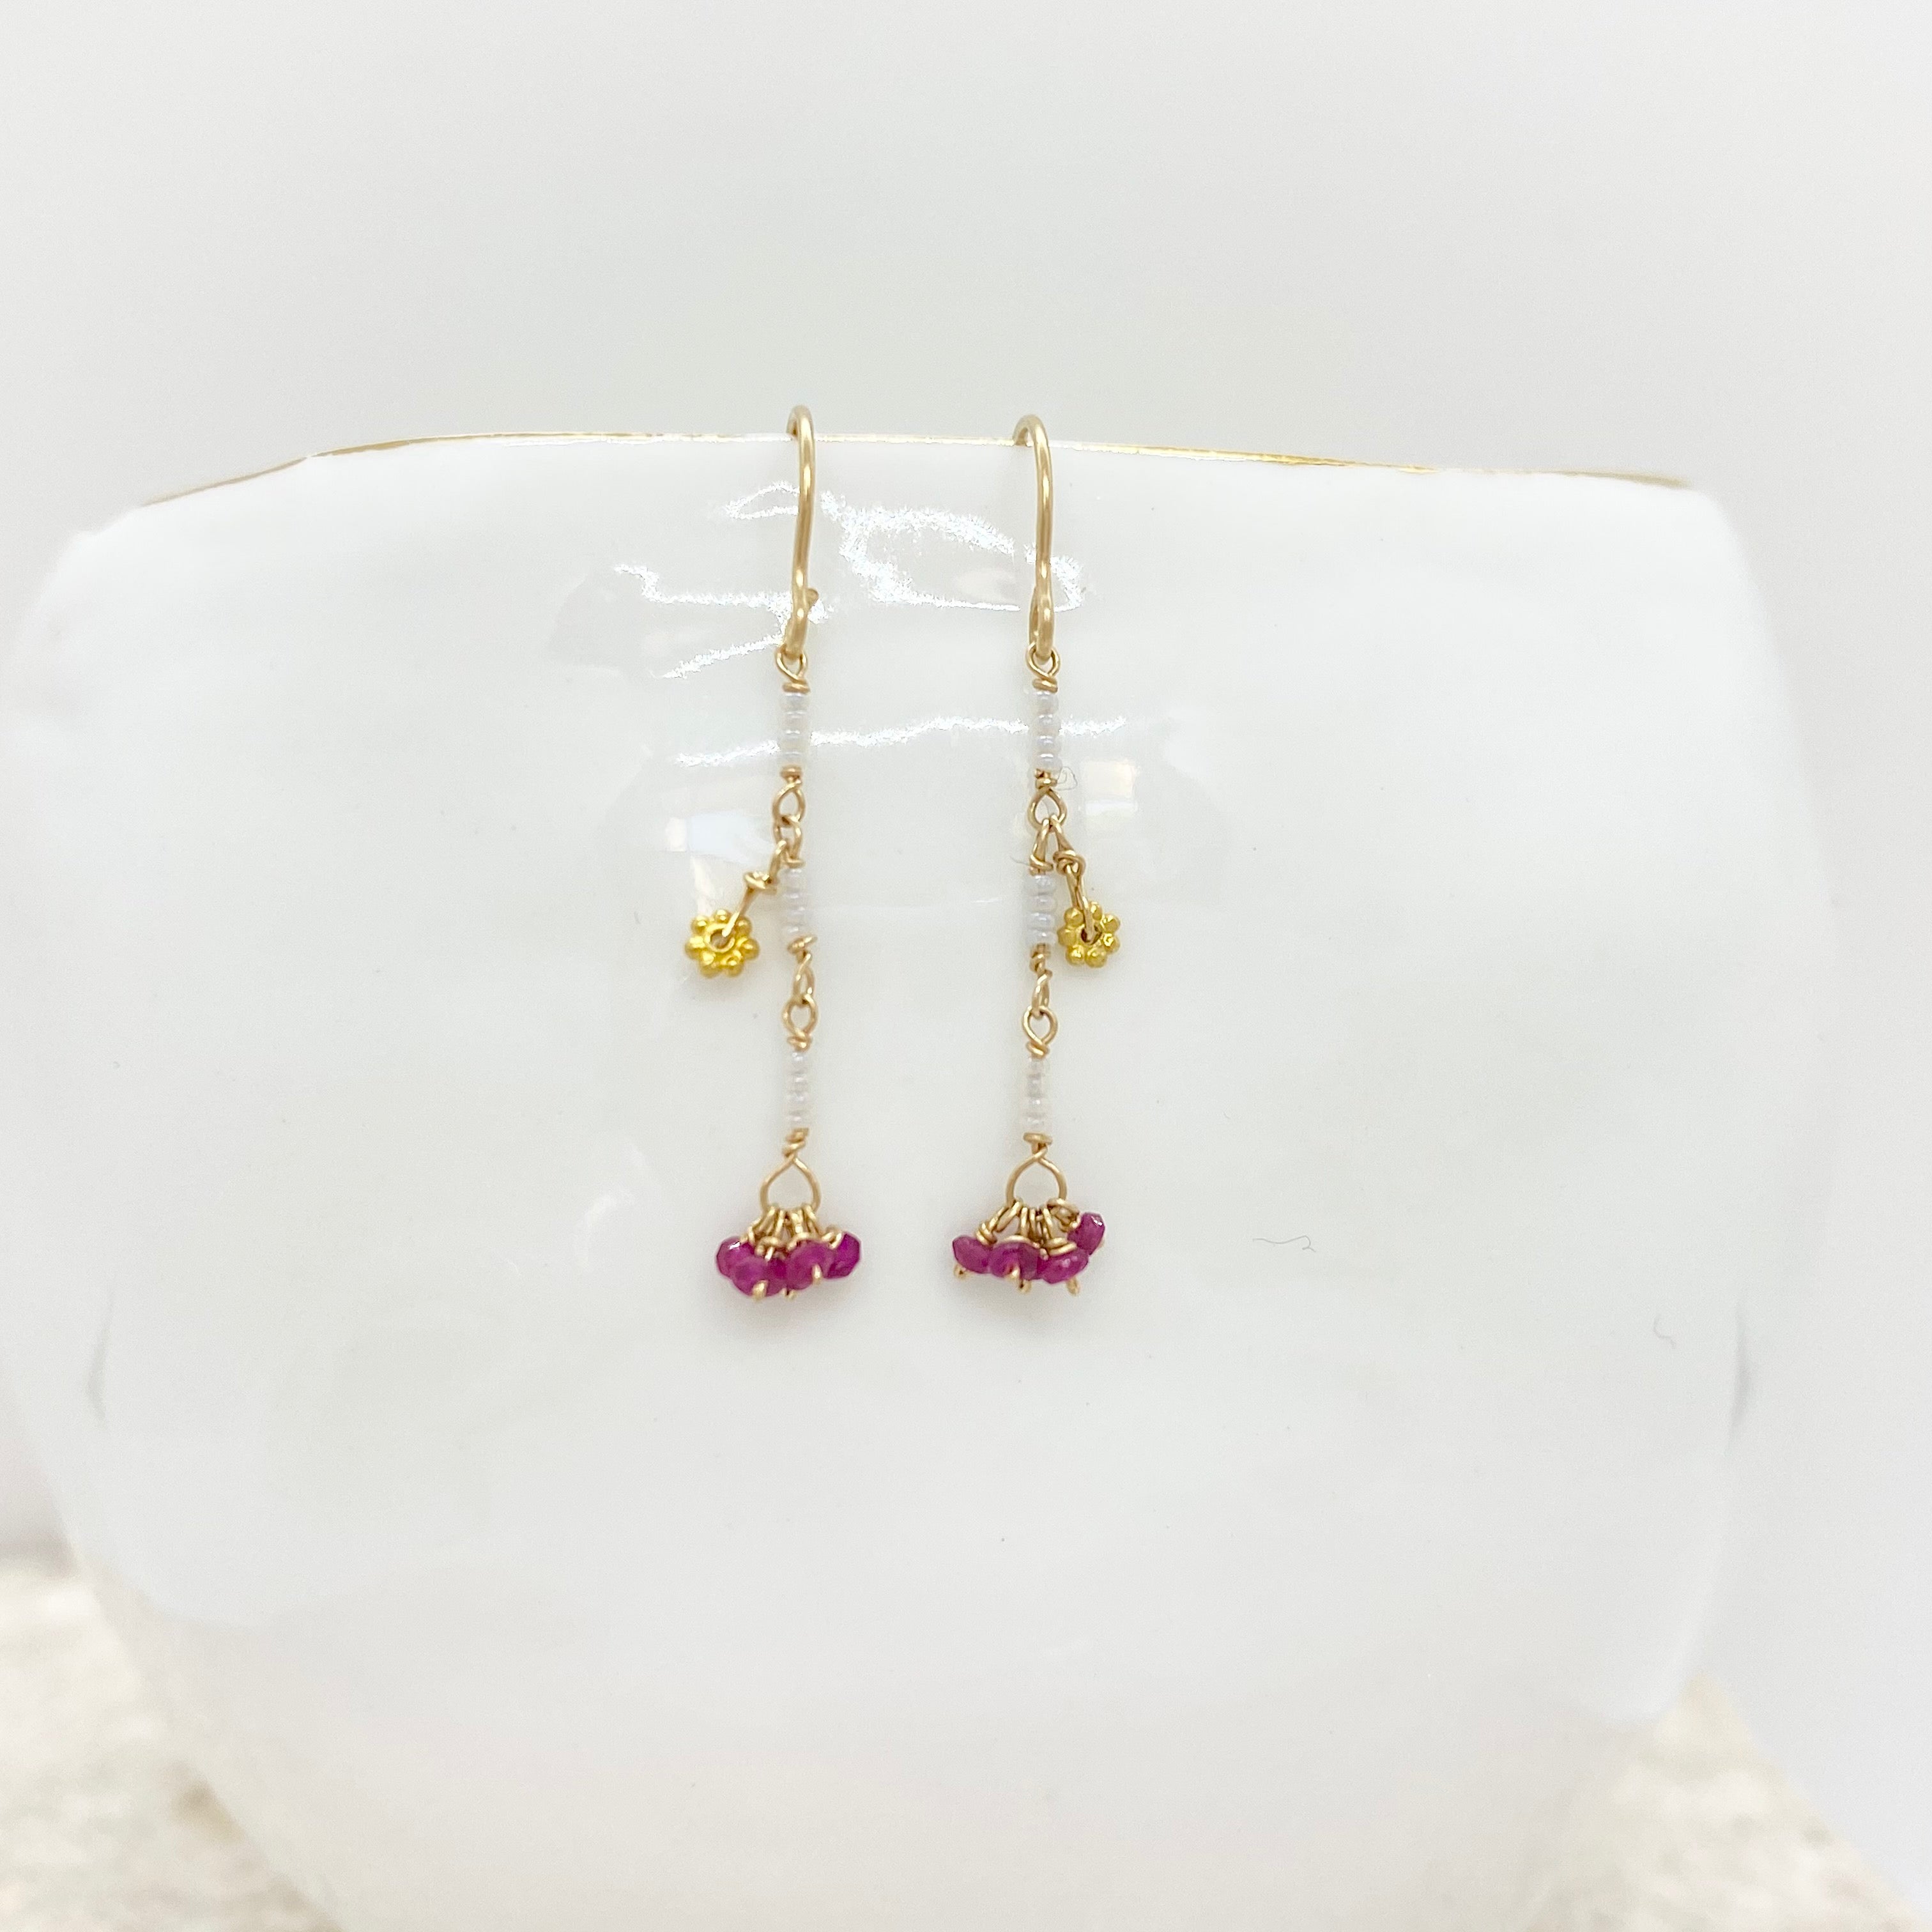 14k Gold Earrings w/ Rubies, 18k Gold Daisy & Antique Italian Beads